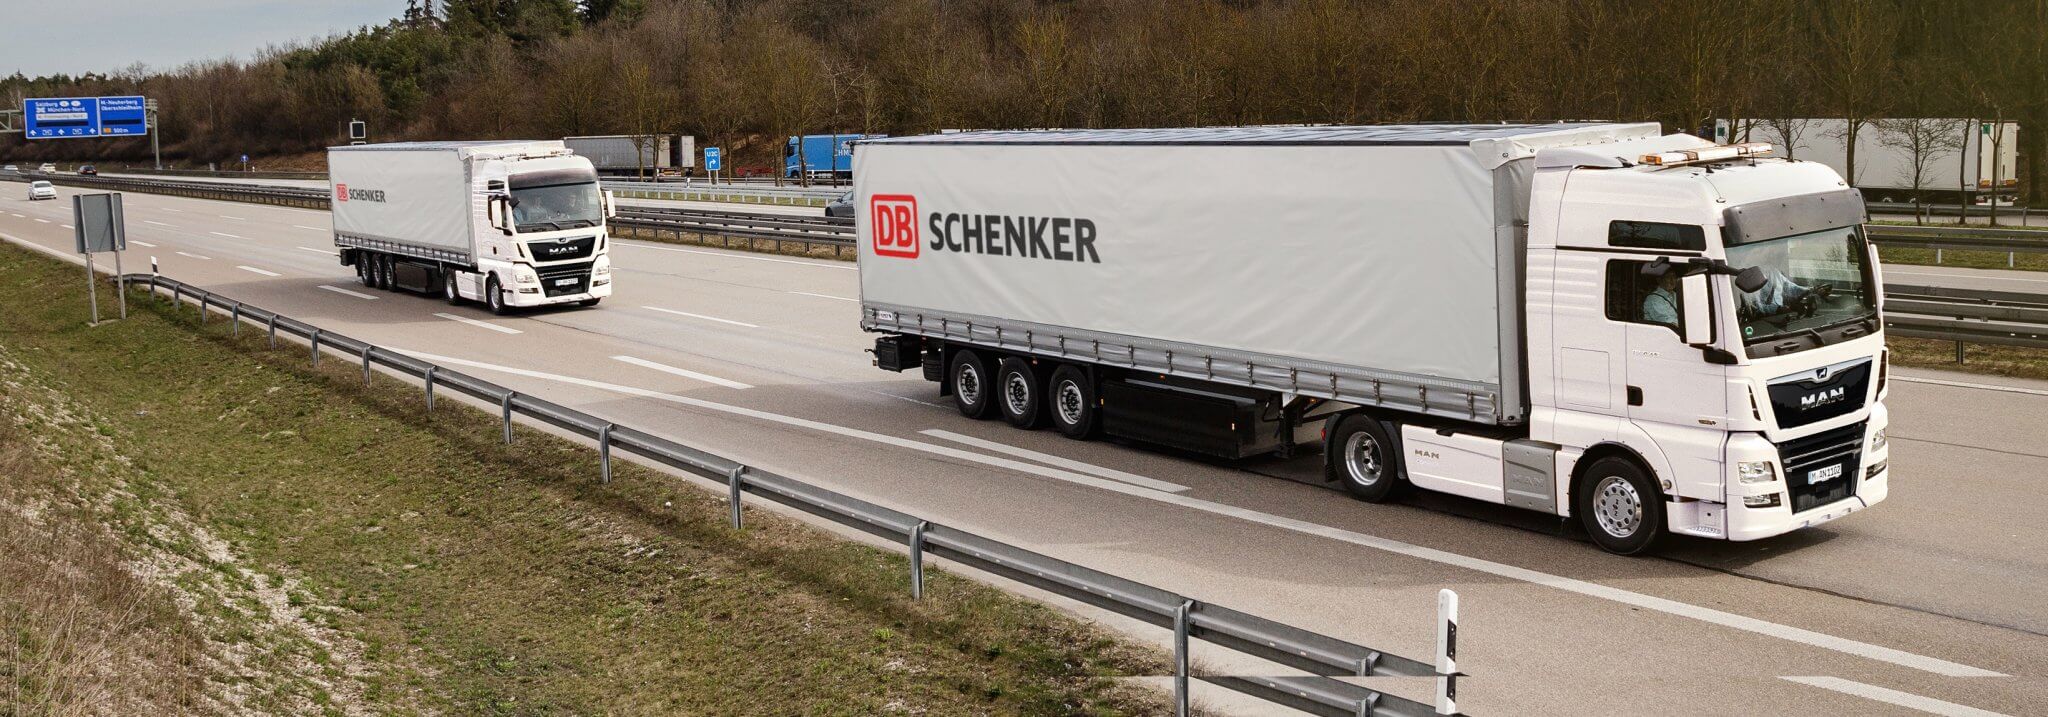 Platooning: DB Schenker und MAN bringen Hightech-Trucks auf die A 9